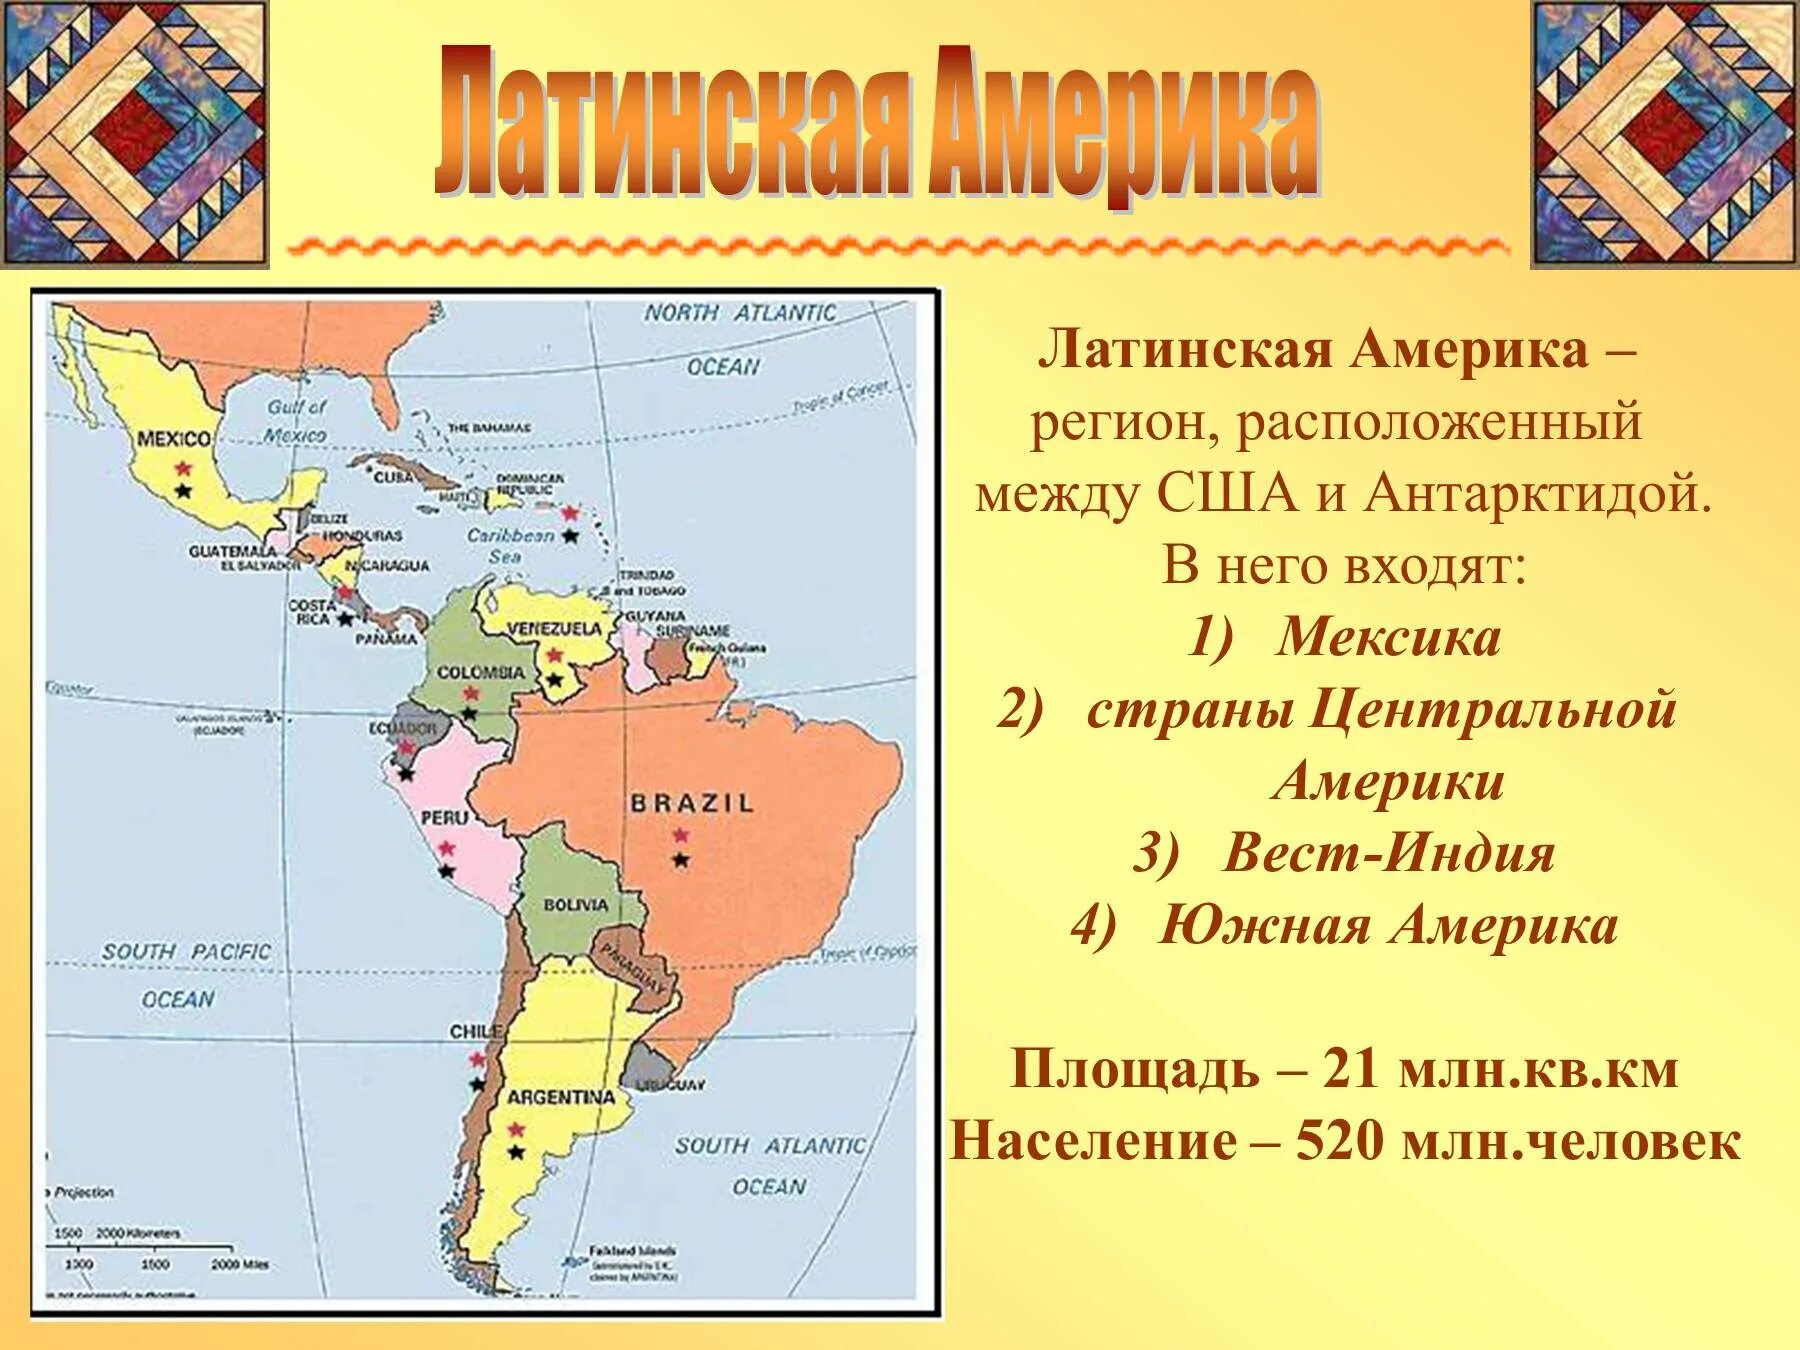 Назовите страну латинской америки. Политическая карта Латинской Америки субрегионы. Состав Латинской Америки карта. Государства на территории Латинской Америки. Границы всех государств Латинской Америки и их столицы на карте.